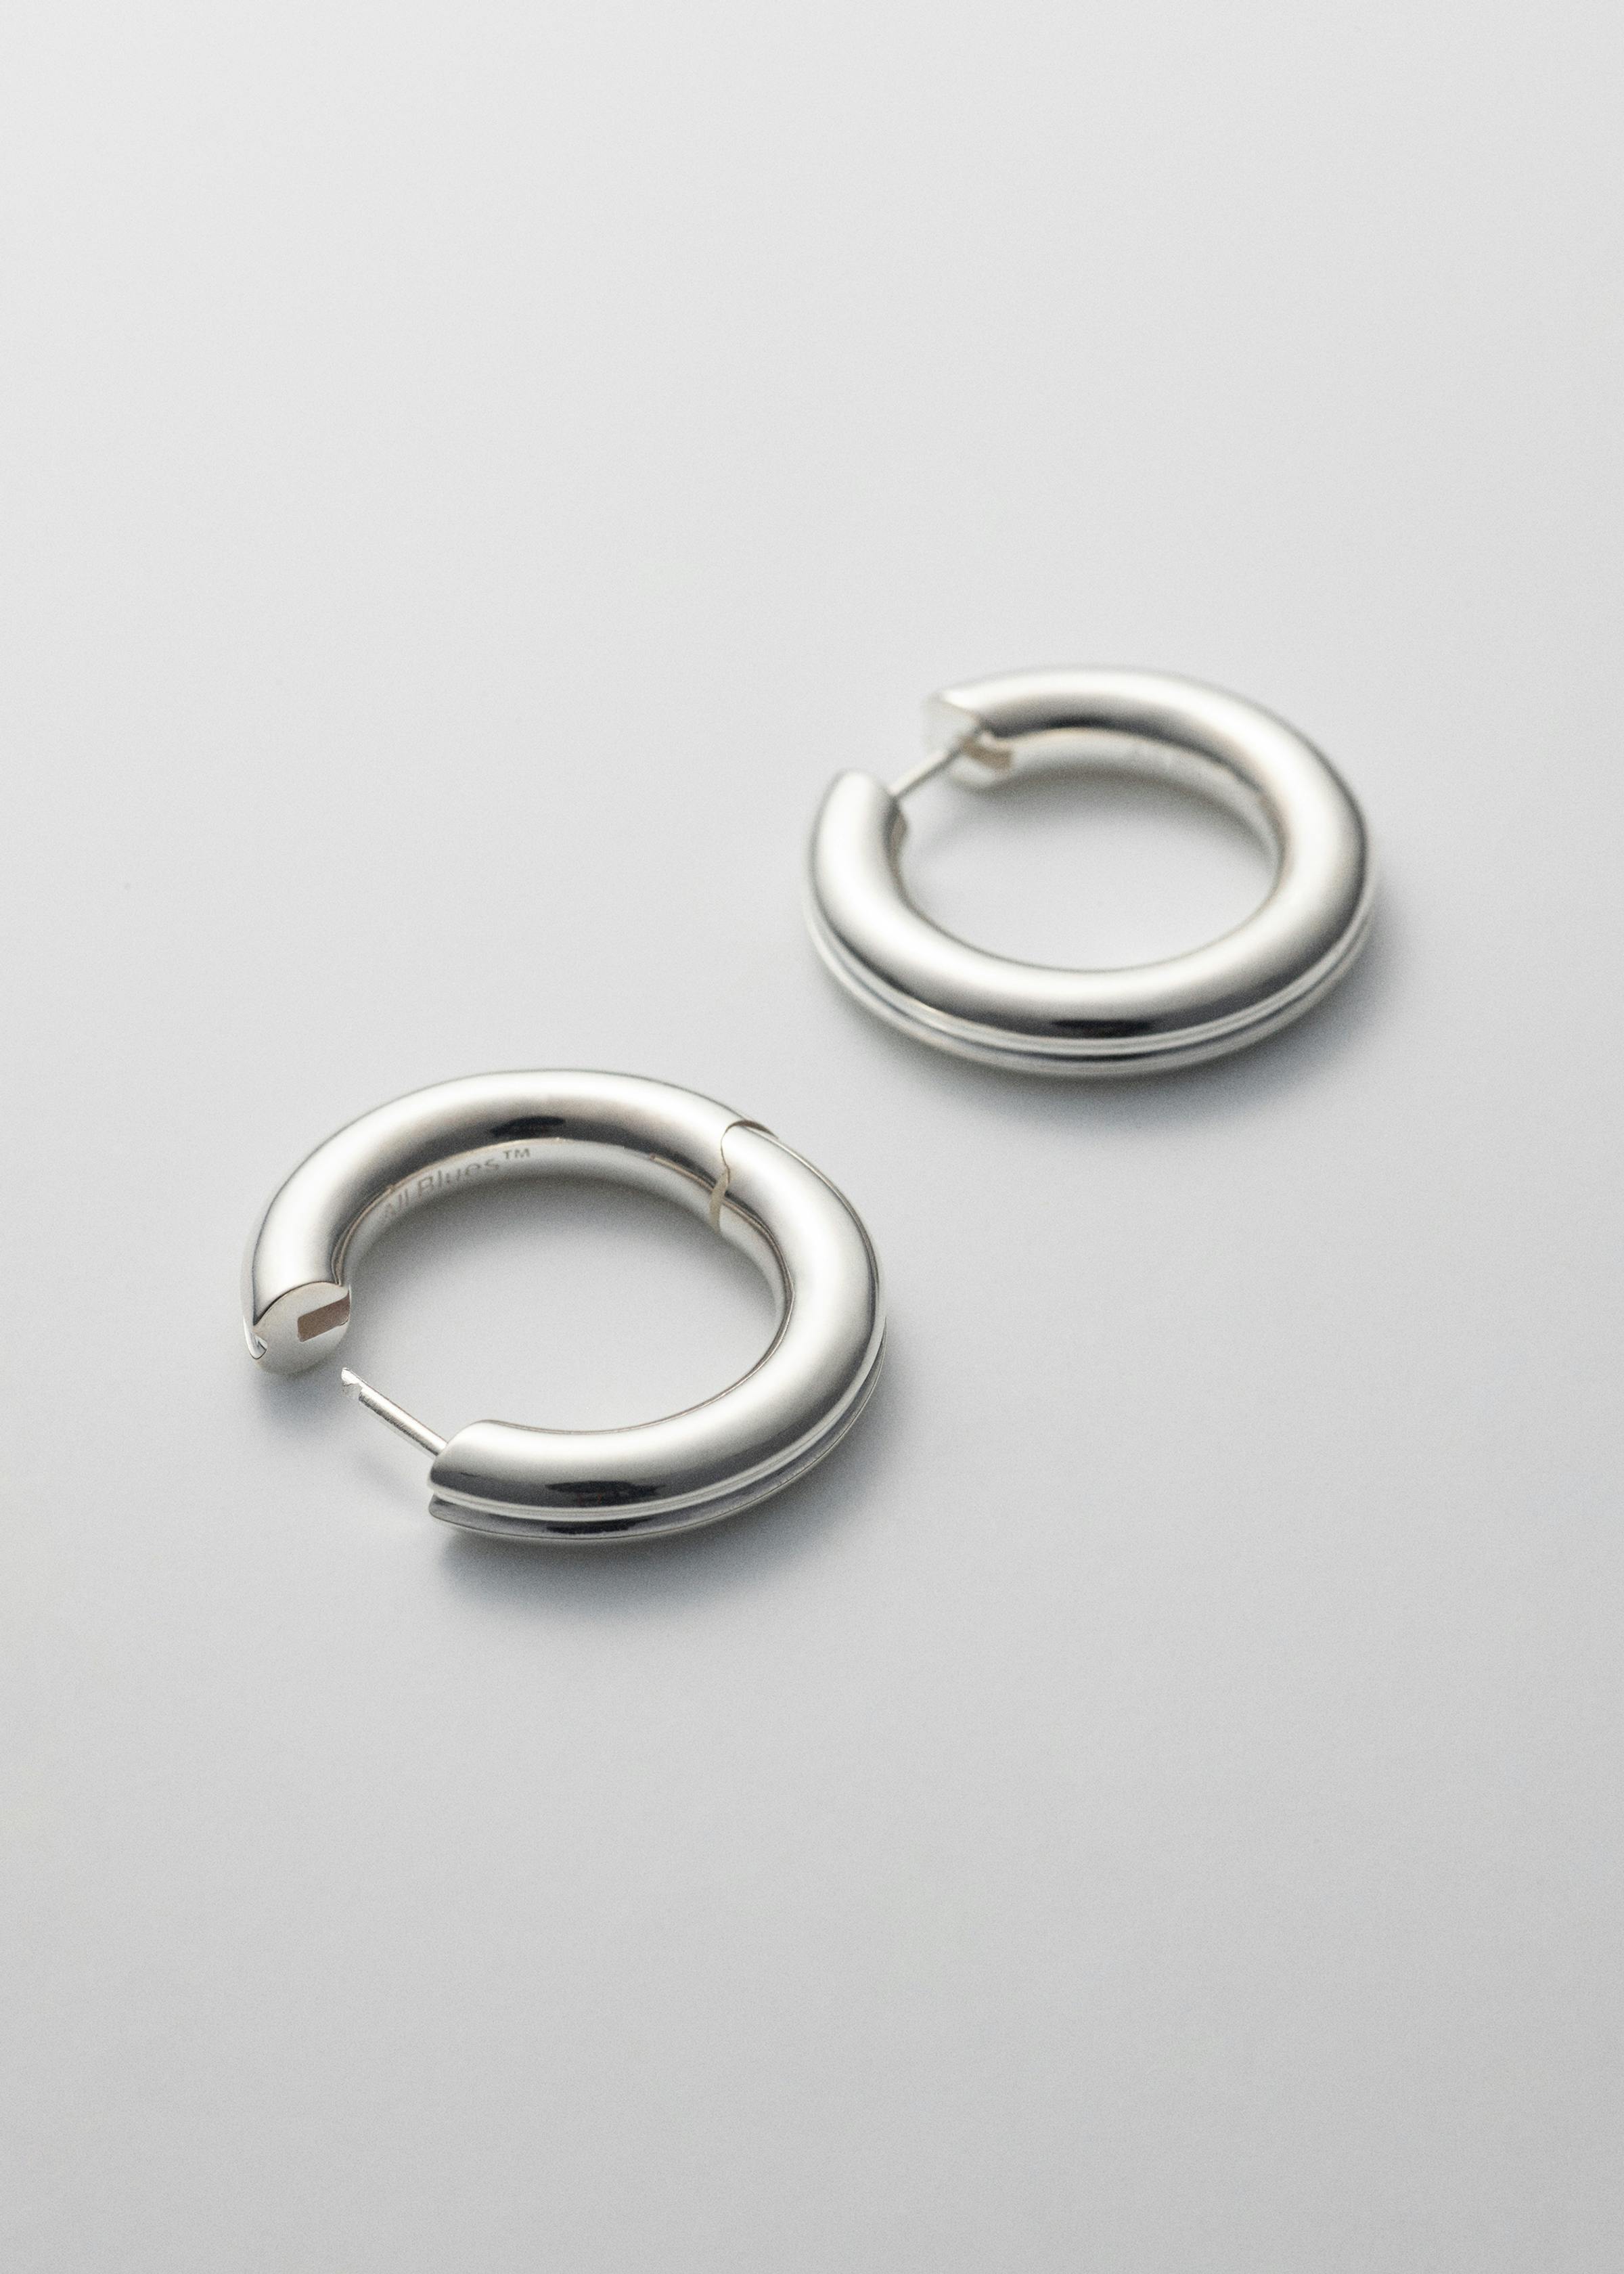 PD earrings 02